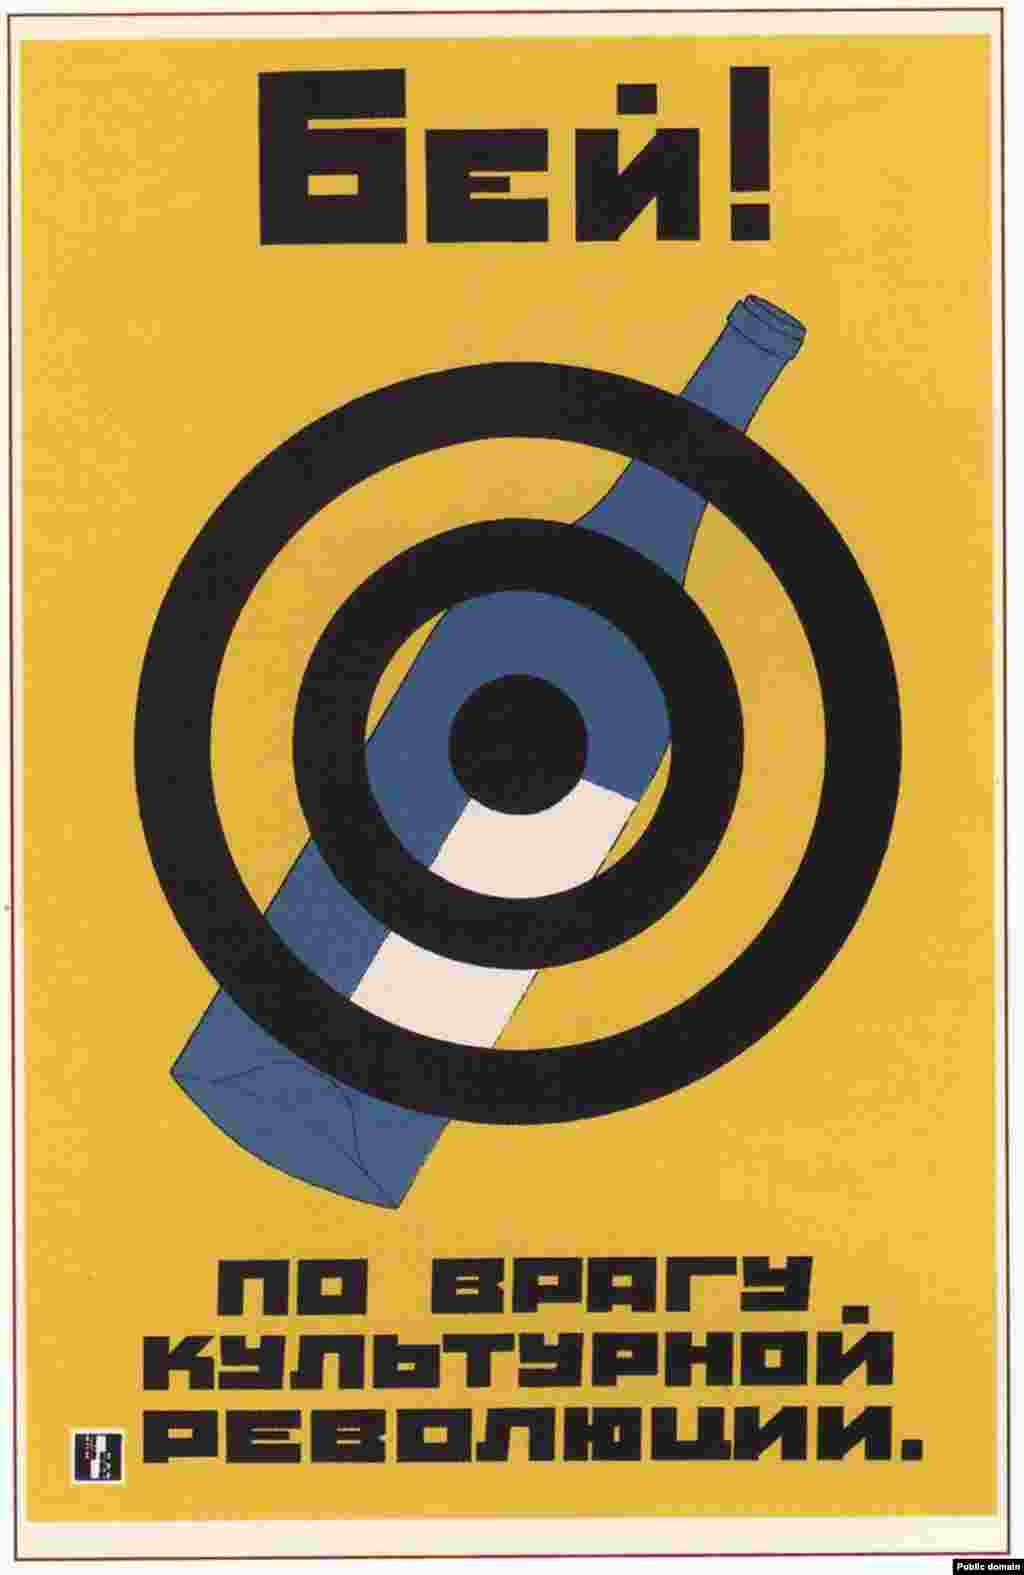 Советский антиалкогольный плакат 1930 года. Алкоголь назван &laquo;врагом культурной революции&raquo;.